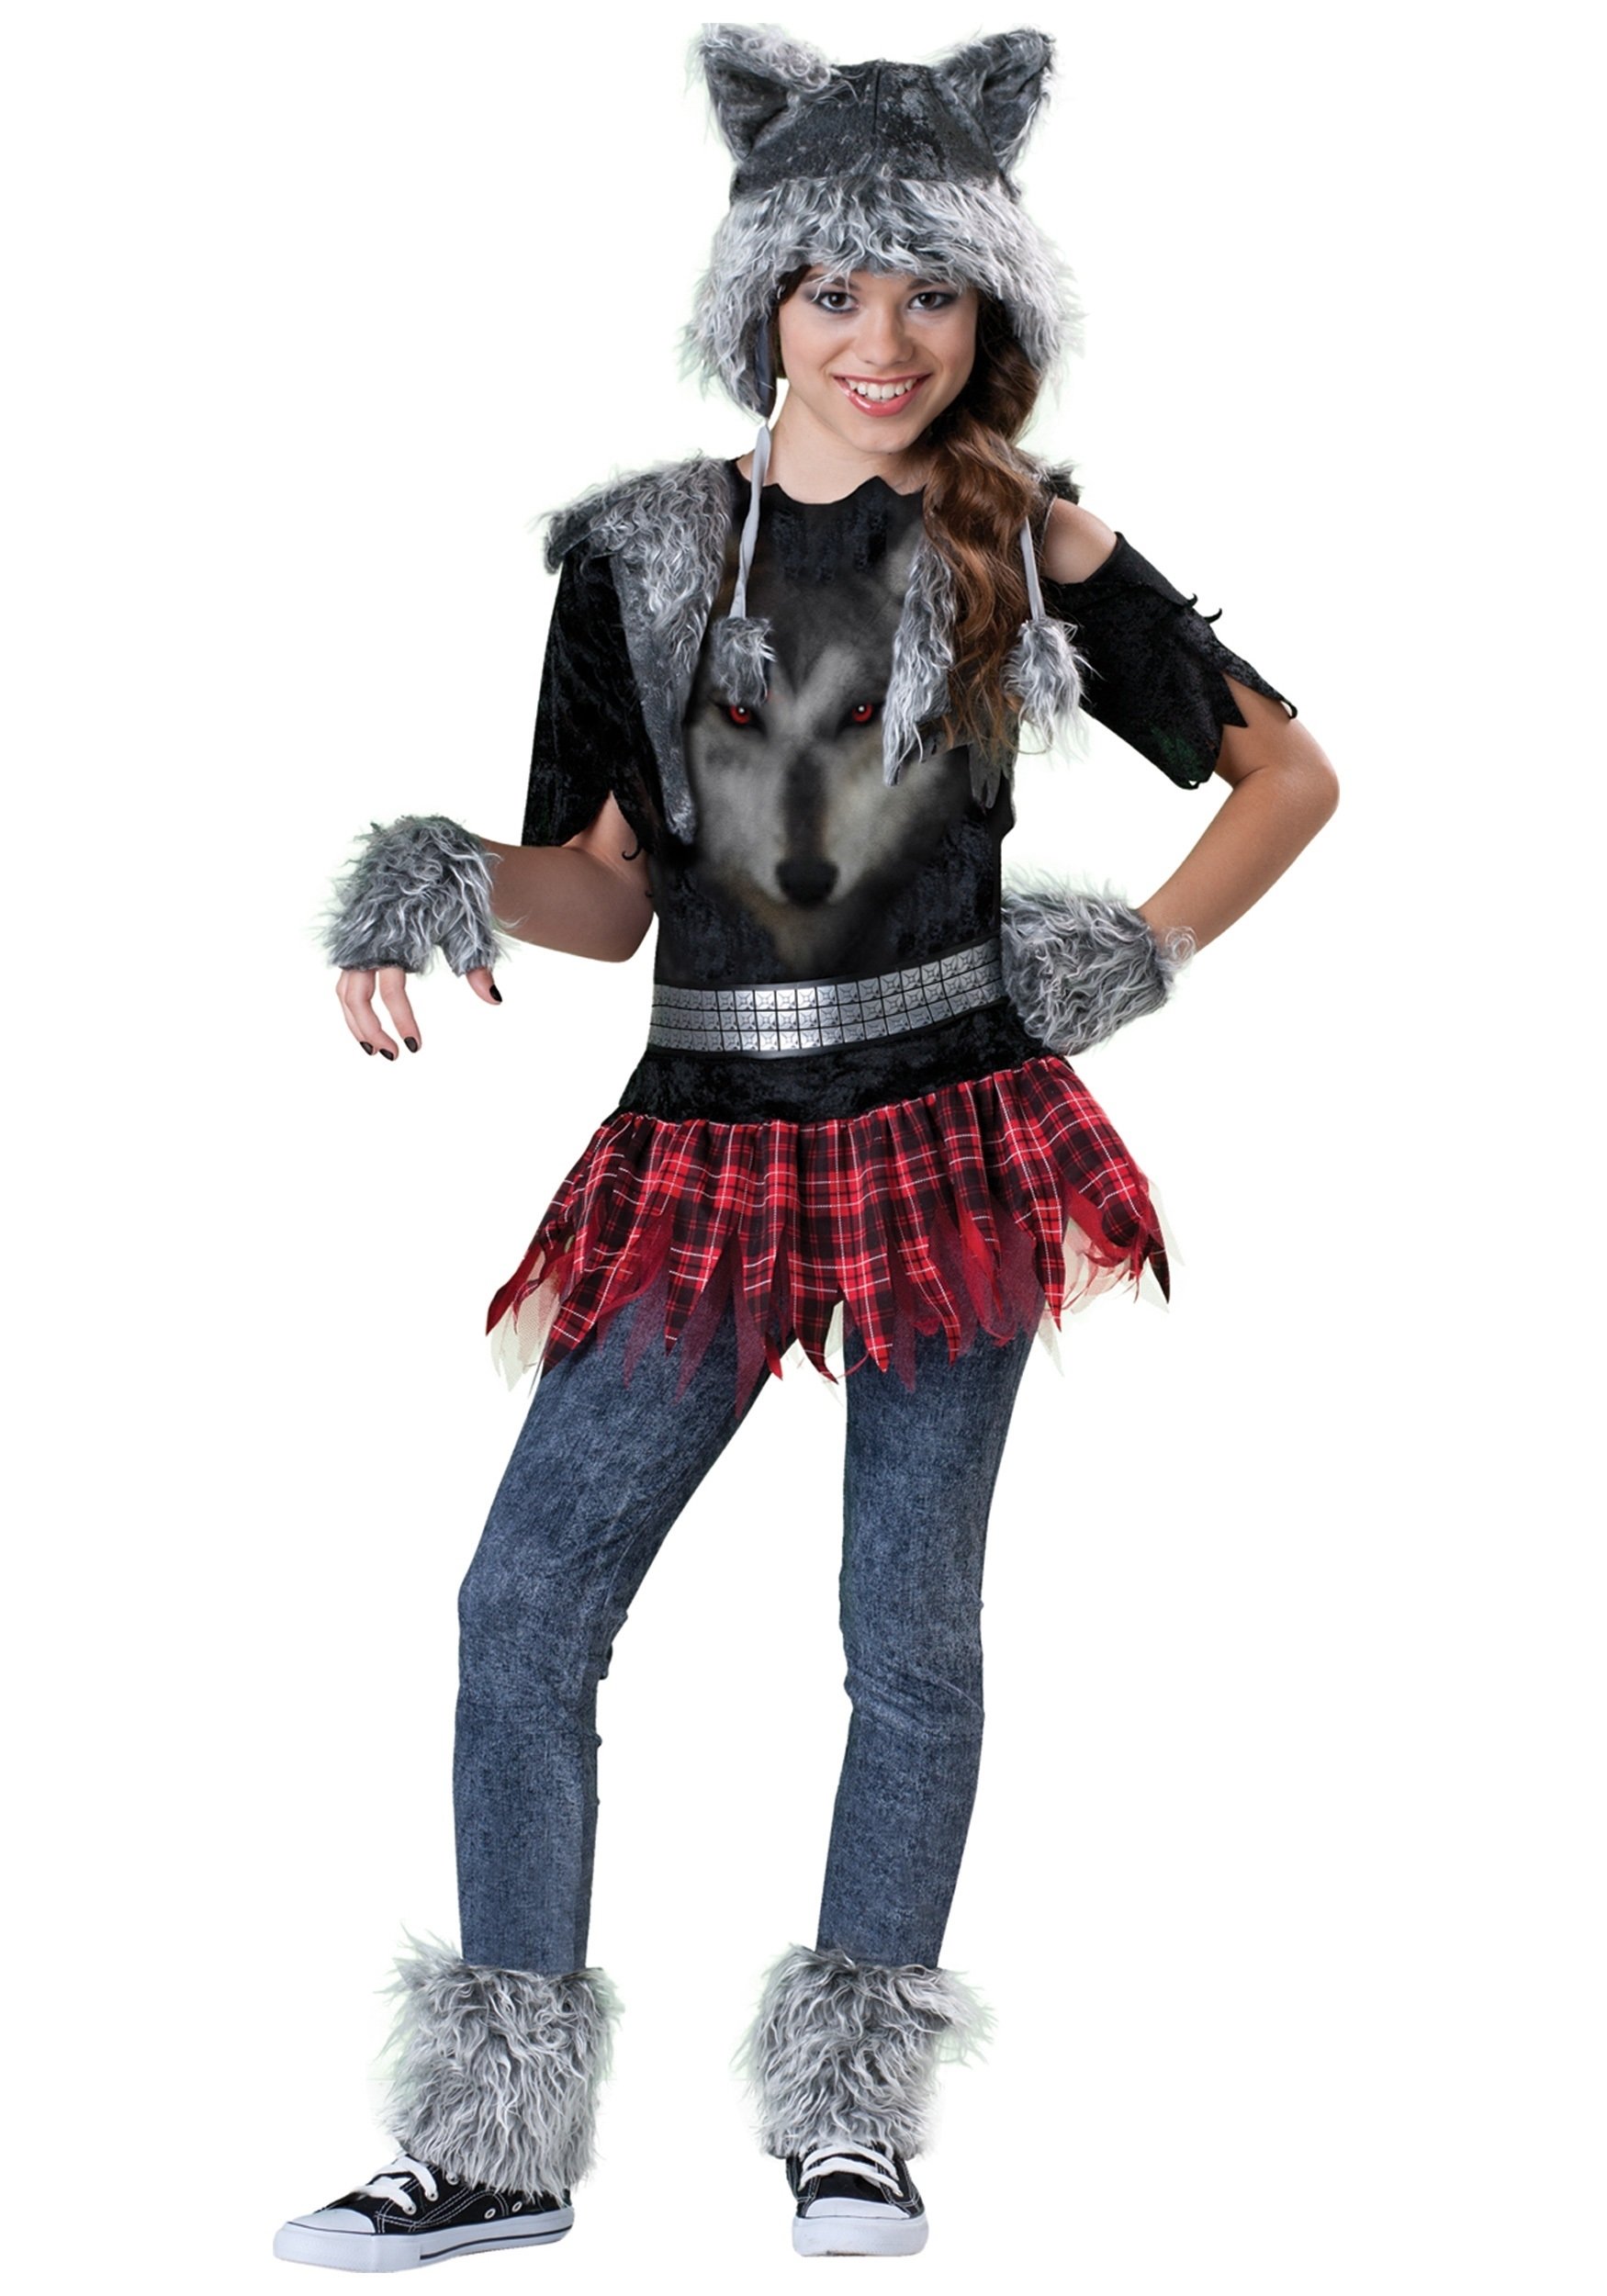 10 Attractive Halloween Costume Ideas For Tweens tween wolf costume tween girls scary halloween costume ideas 1 2022